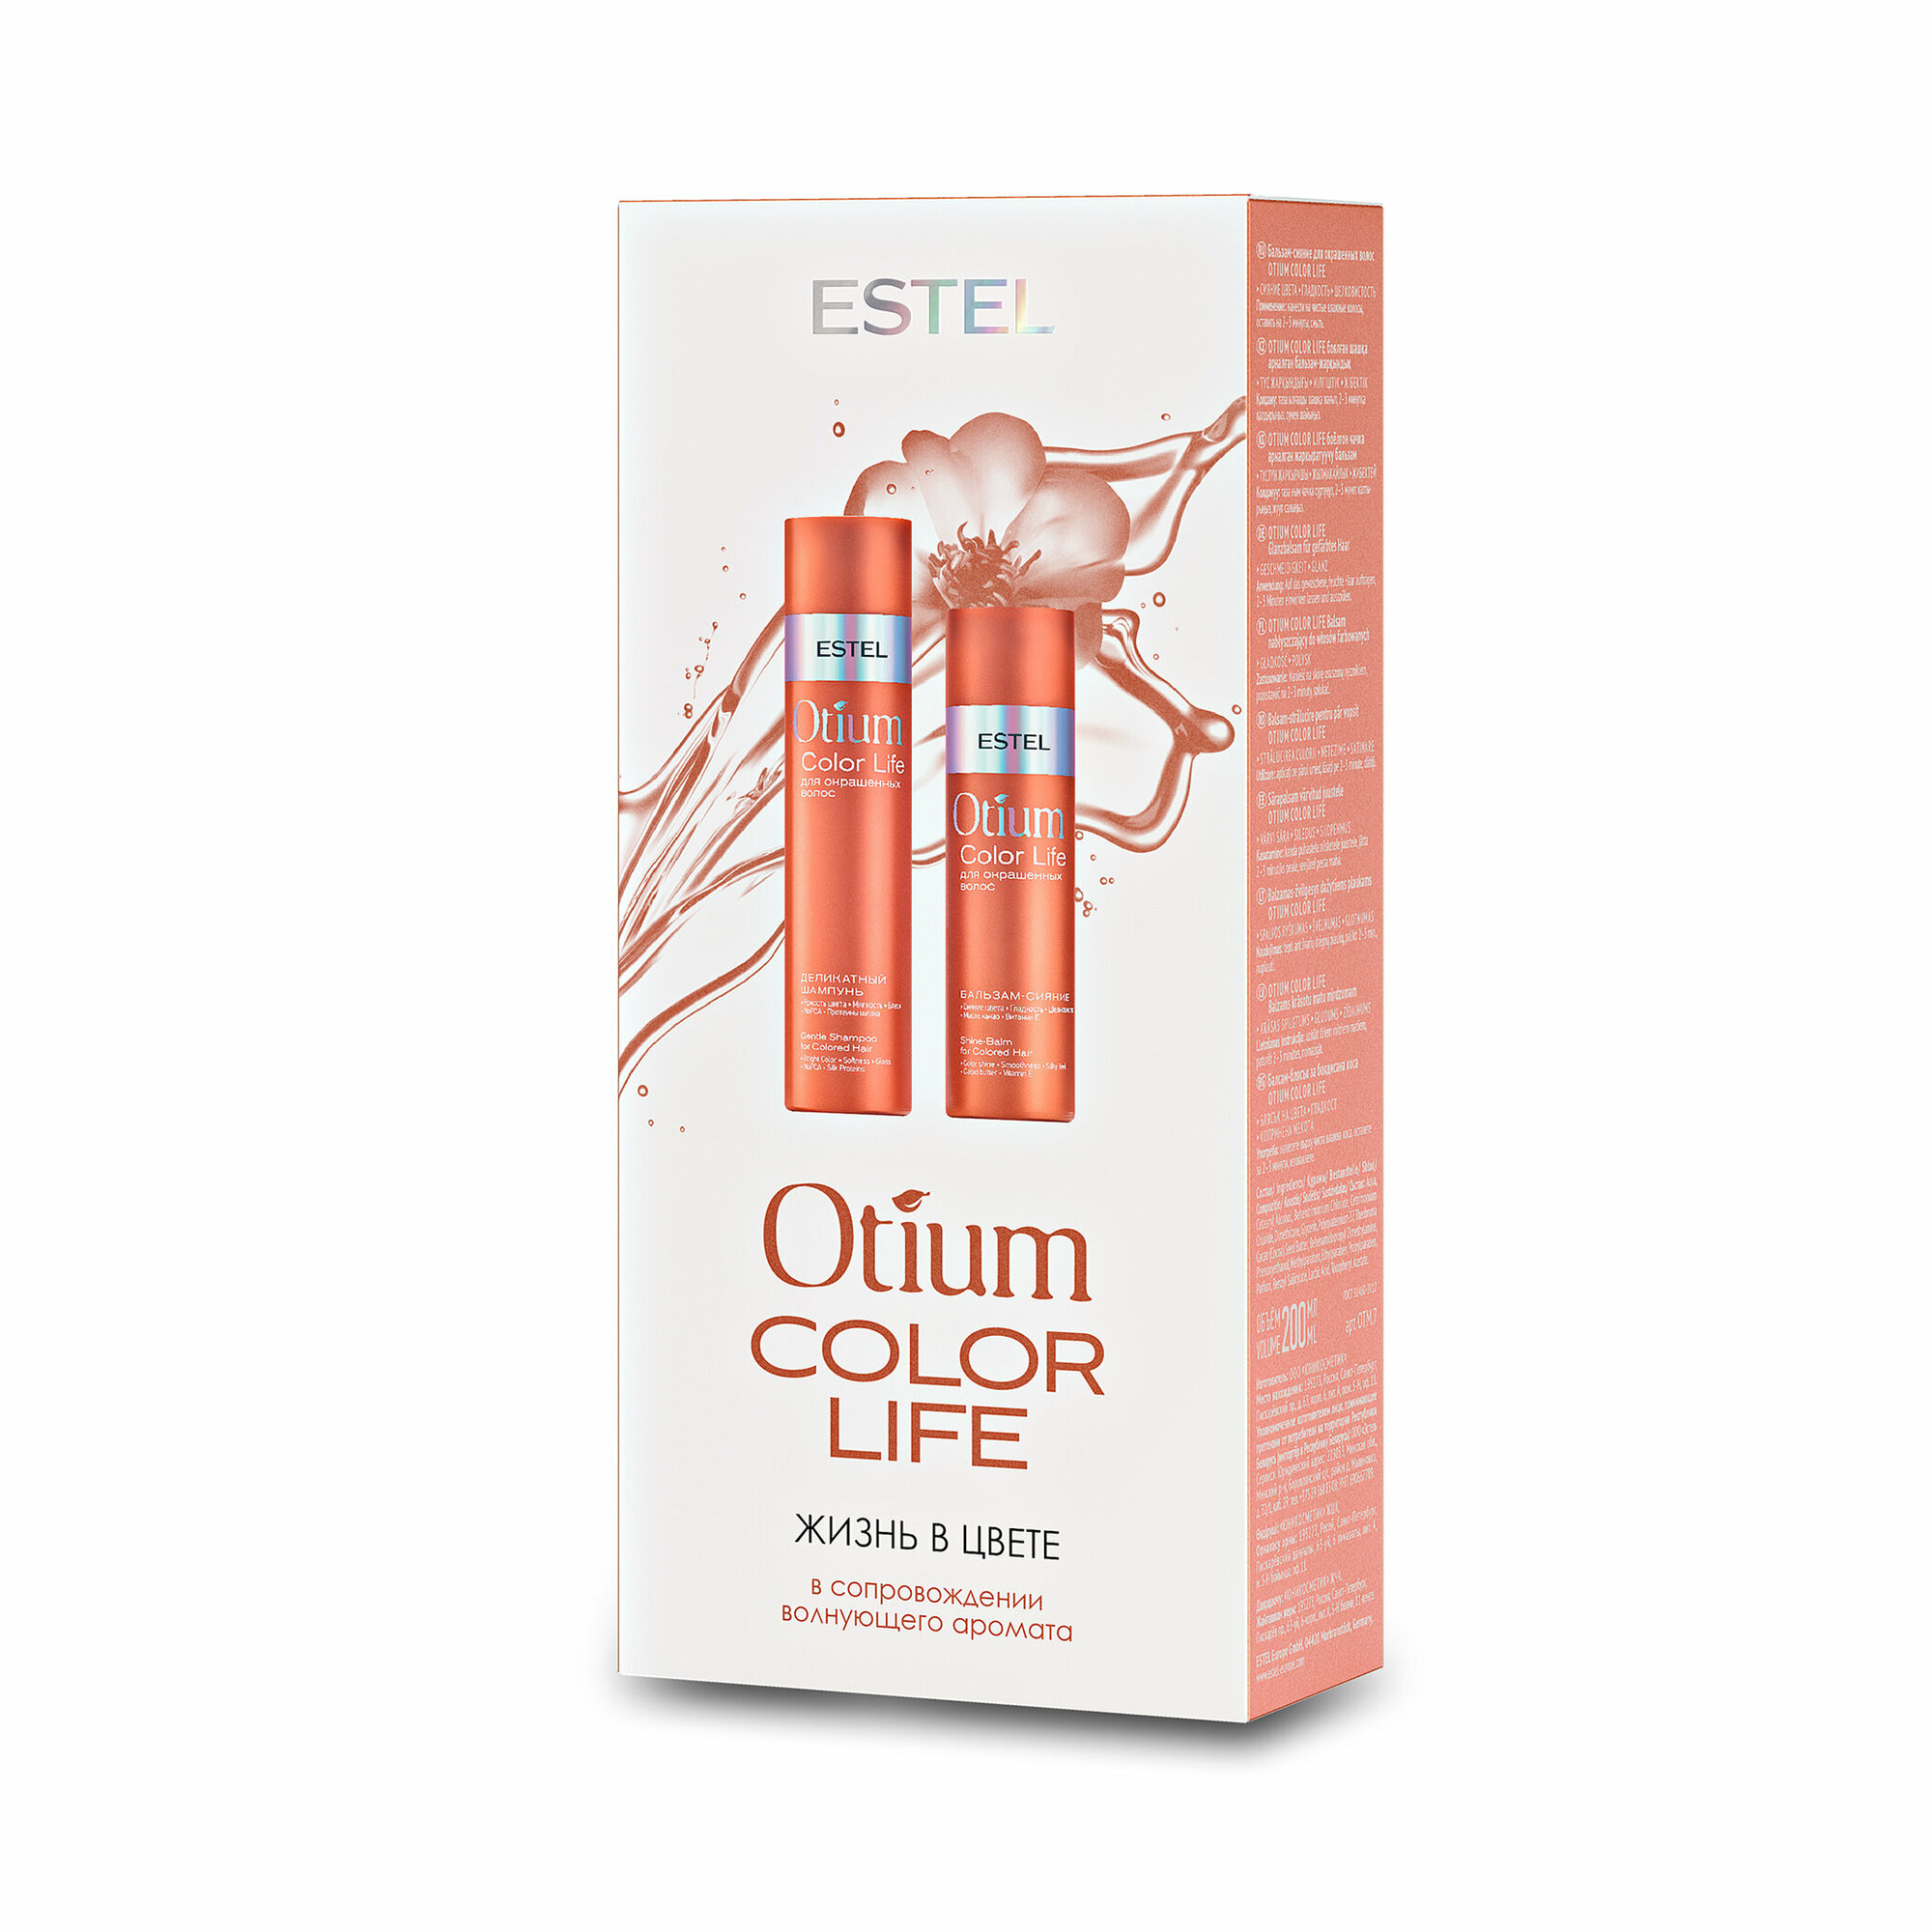 Набор "OTIUM COLOR LIFE" для окрашенных волос от бренда "ESTEL"